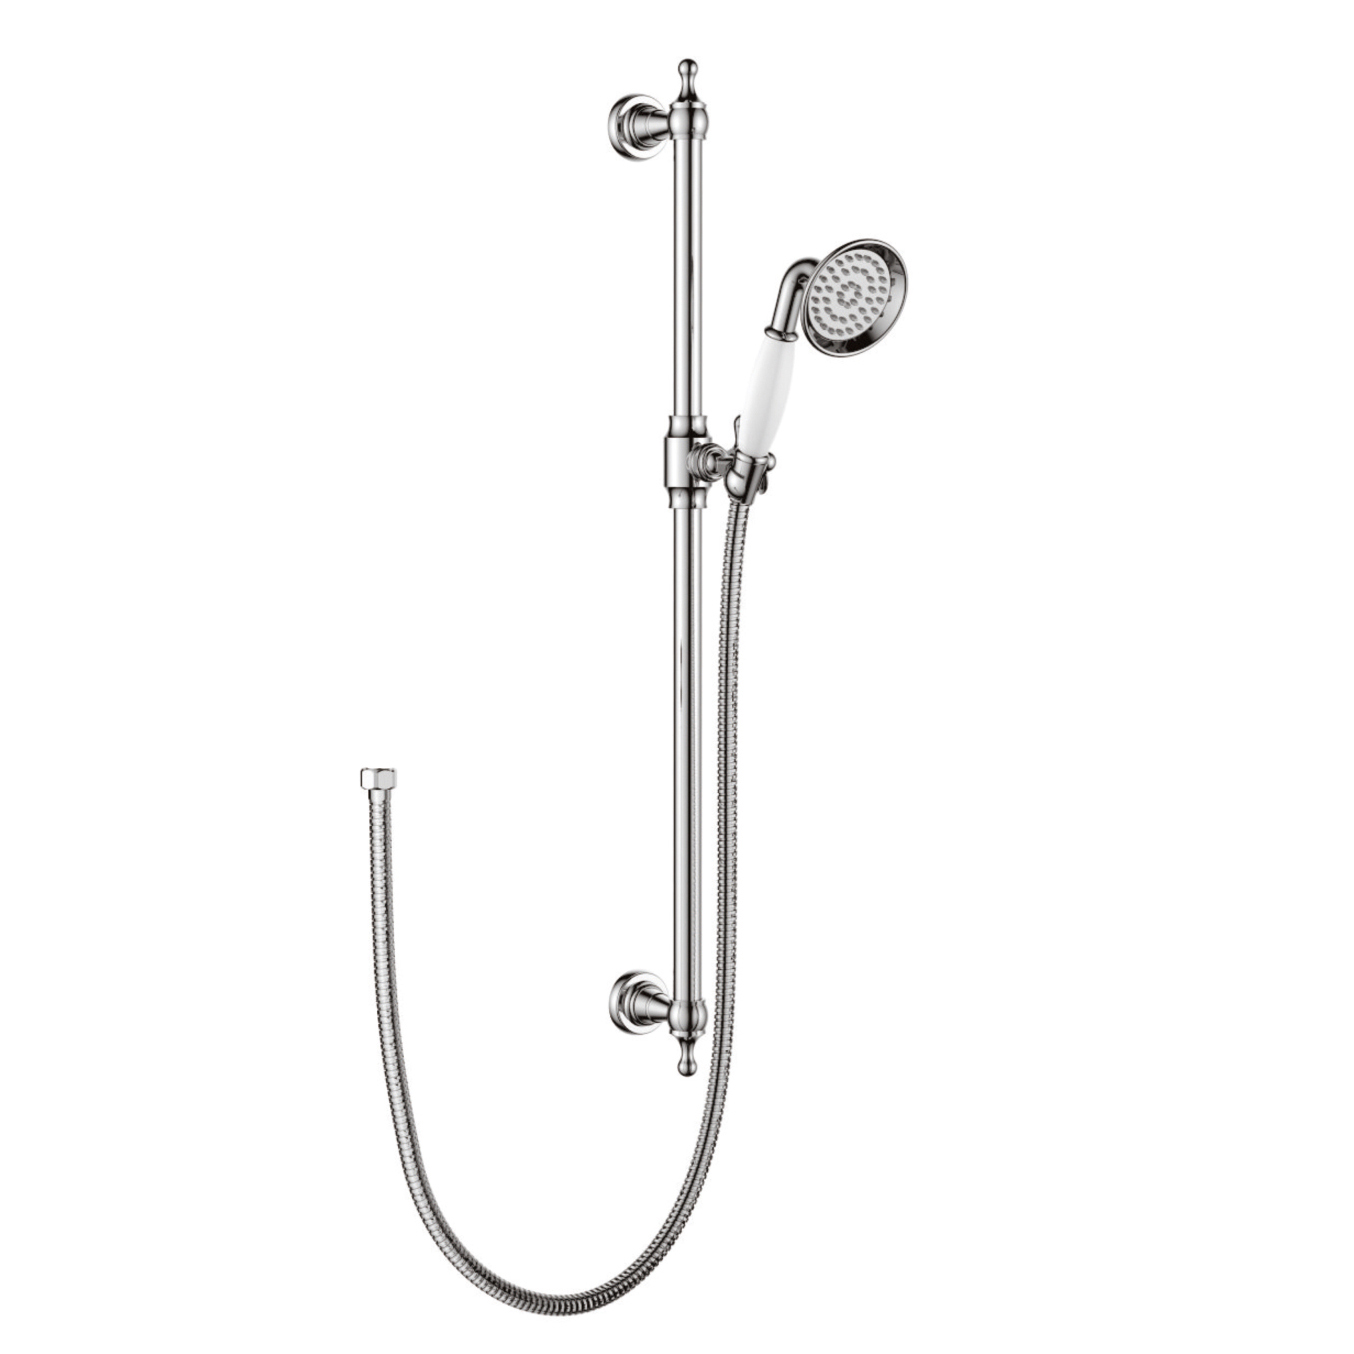 1F1218-SR1G Еднофункционален ръчен душ върху месингова класическа плъзгаща се релса за баня